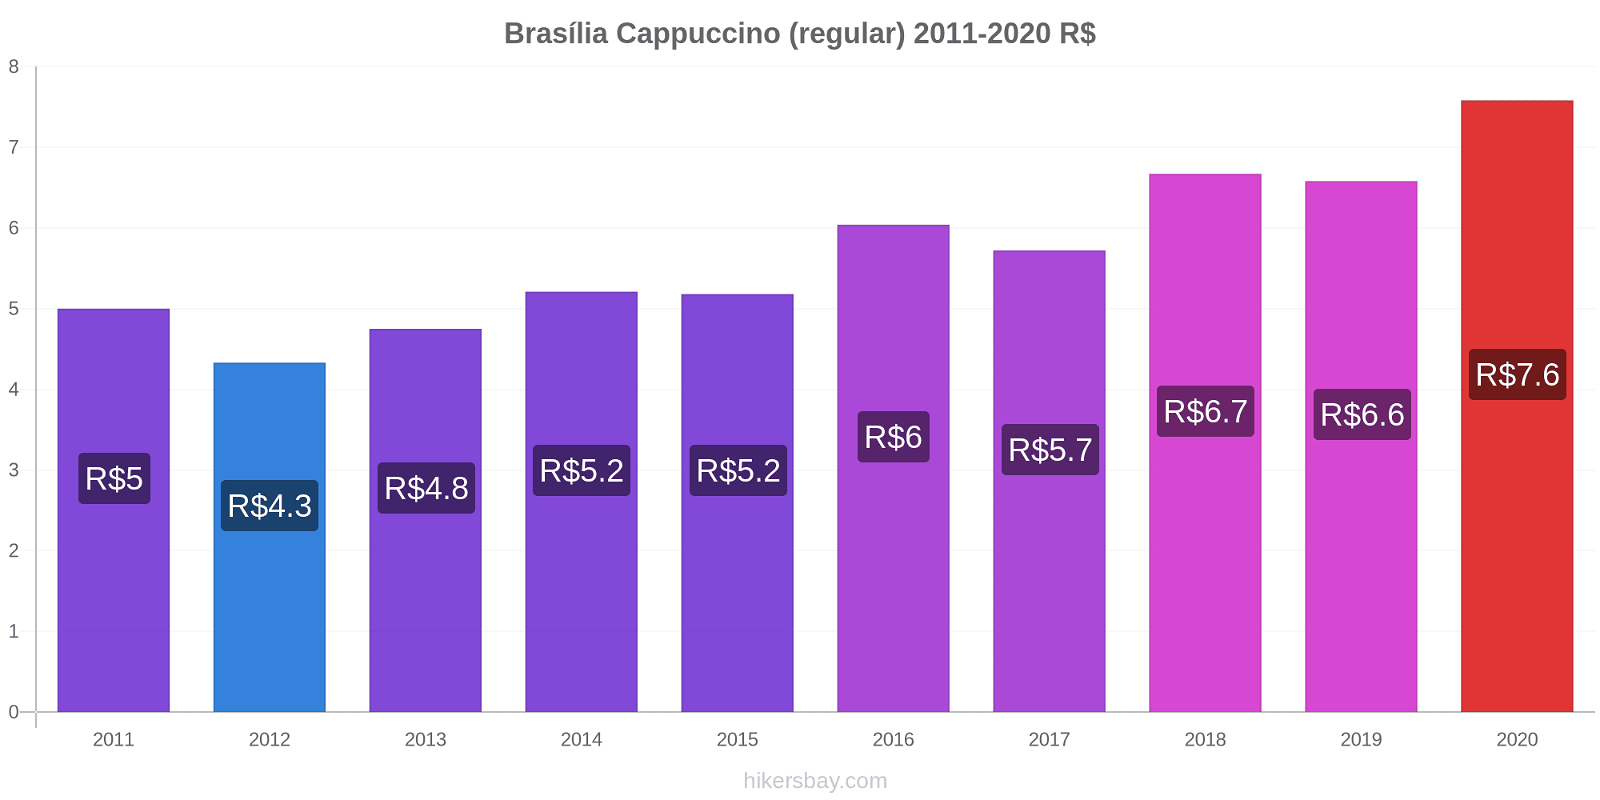 Brasília price changes Cappuccino (regular) hikersbay.com